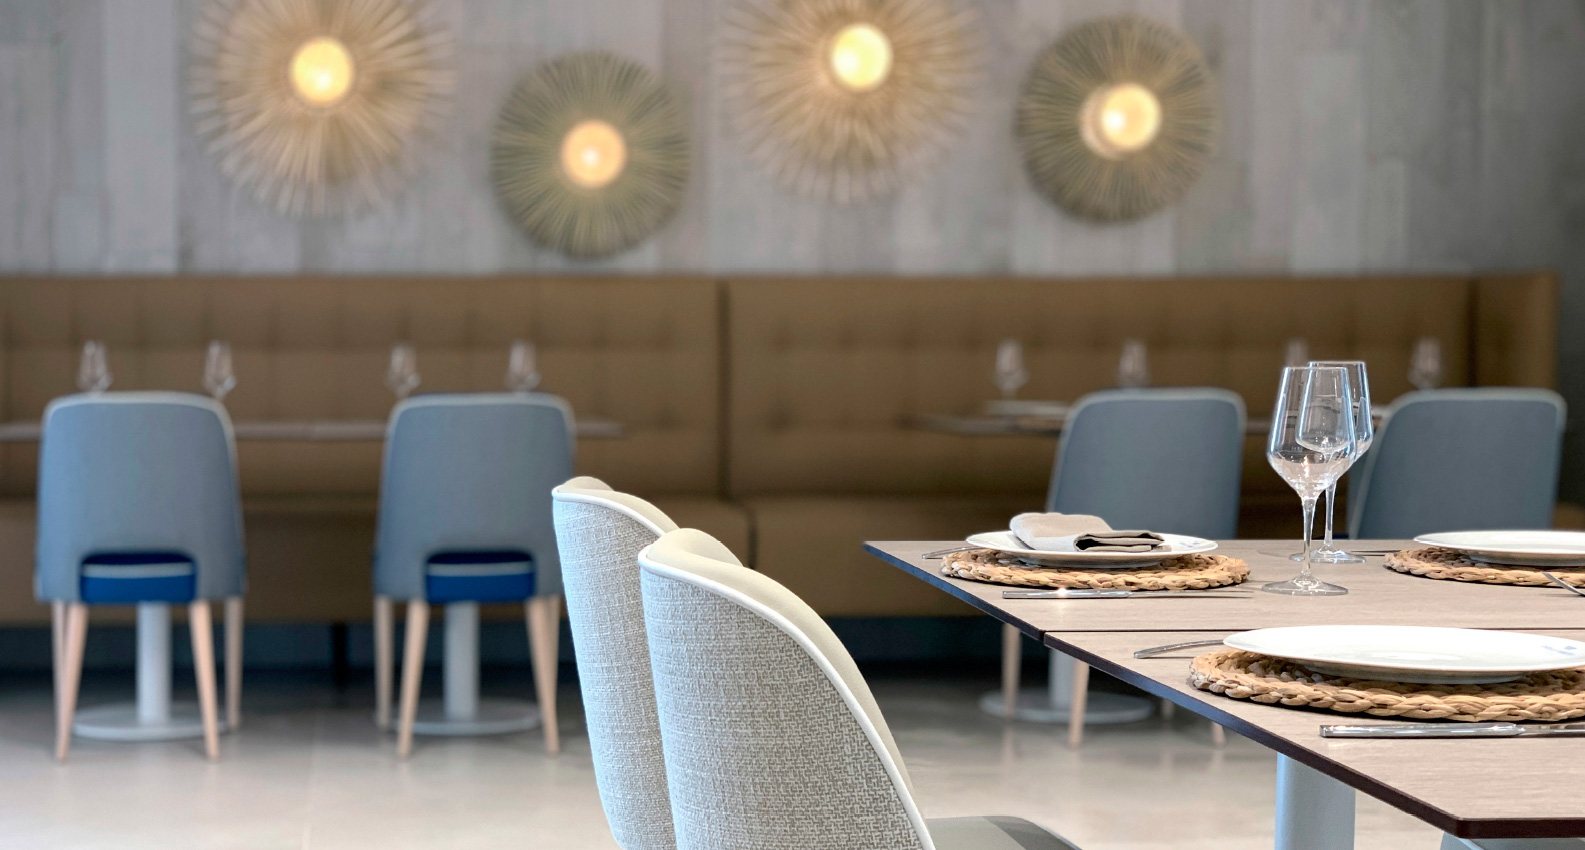 Restaurante moderno con muebles sillas fabricadas a medida por Alexandra con tapizados ignífugos.